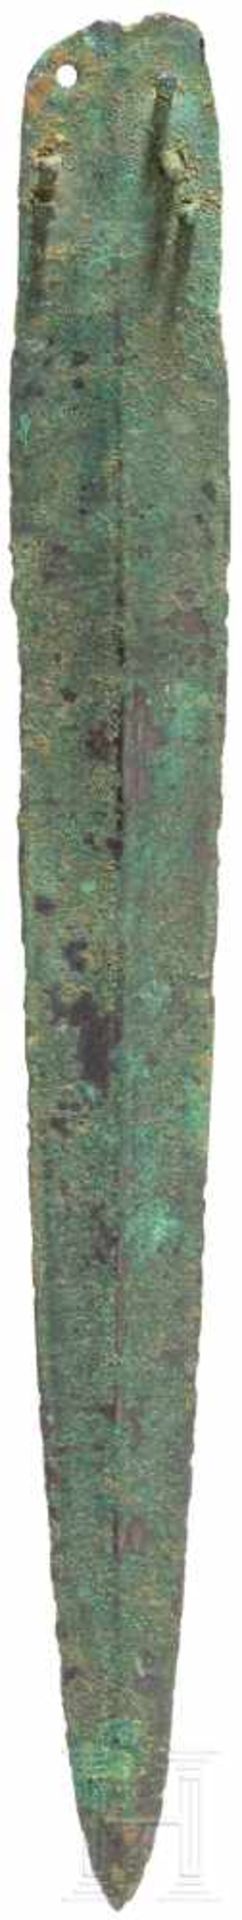 Dolch, Mitteleuropa, Späte Bronzezeit, Stufe D, 13. Jhdt. v. Chr.Griffplattendolch mit Mittelgrat, - Bild 2 aus 2